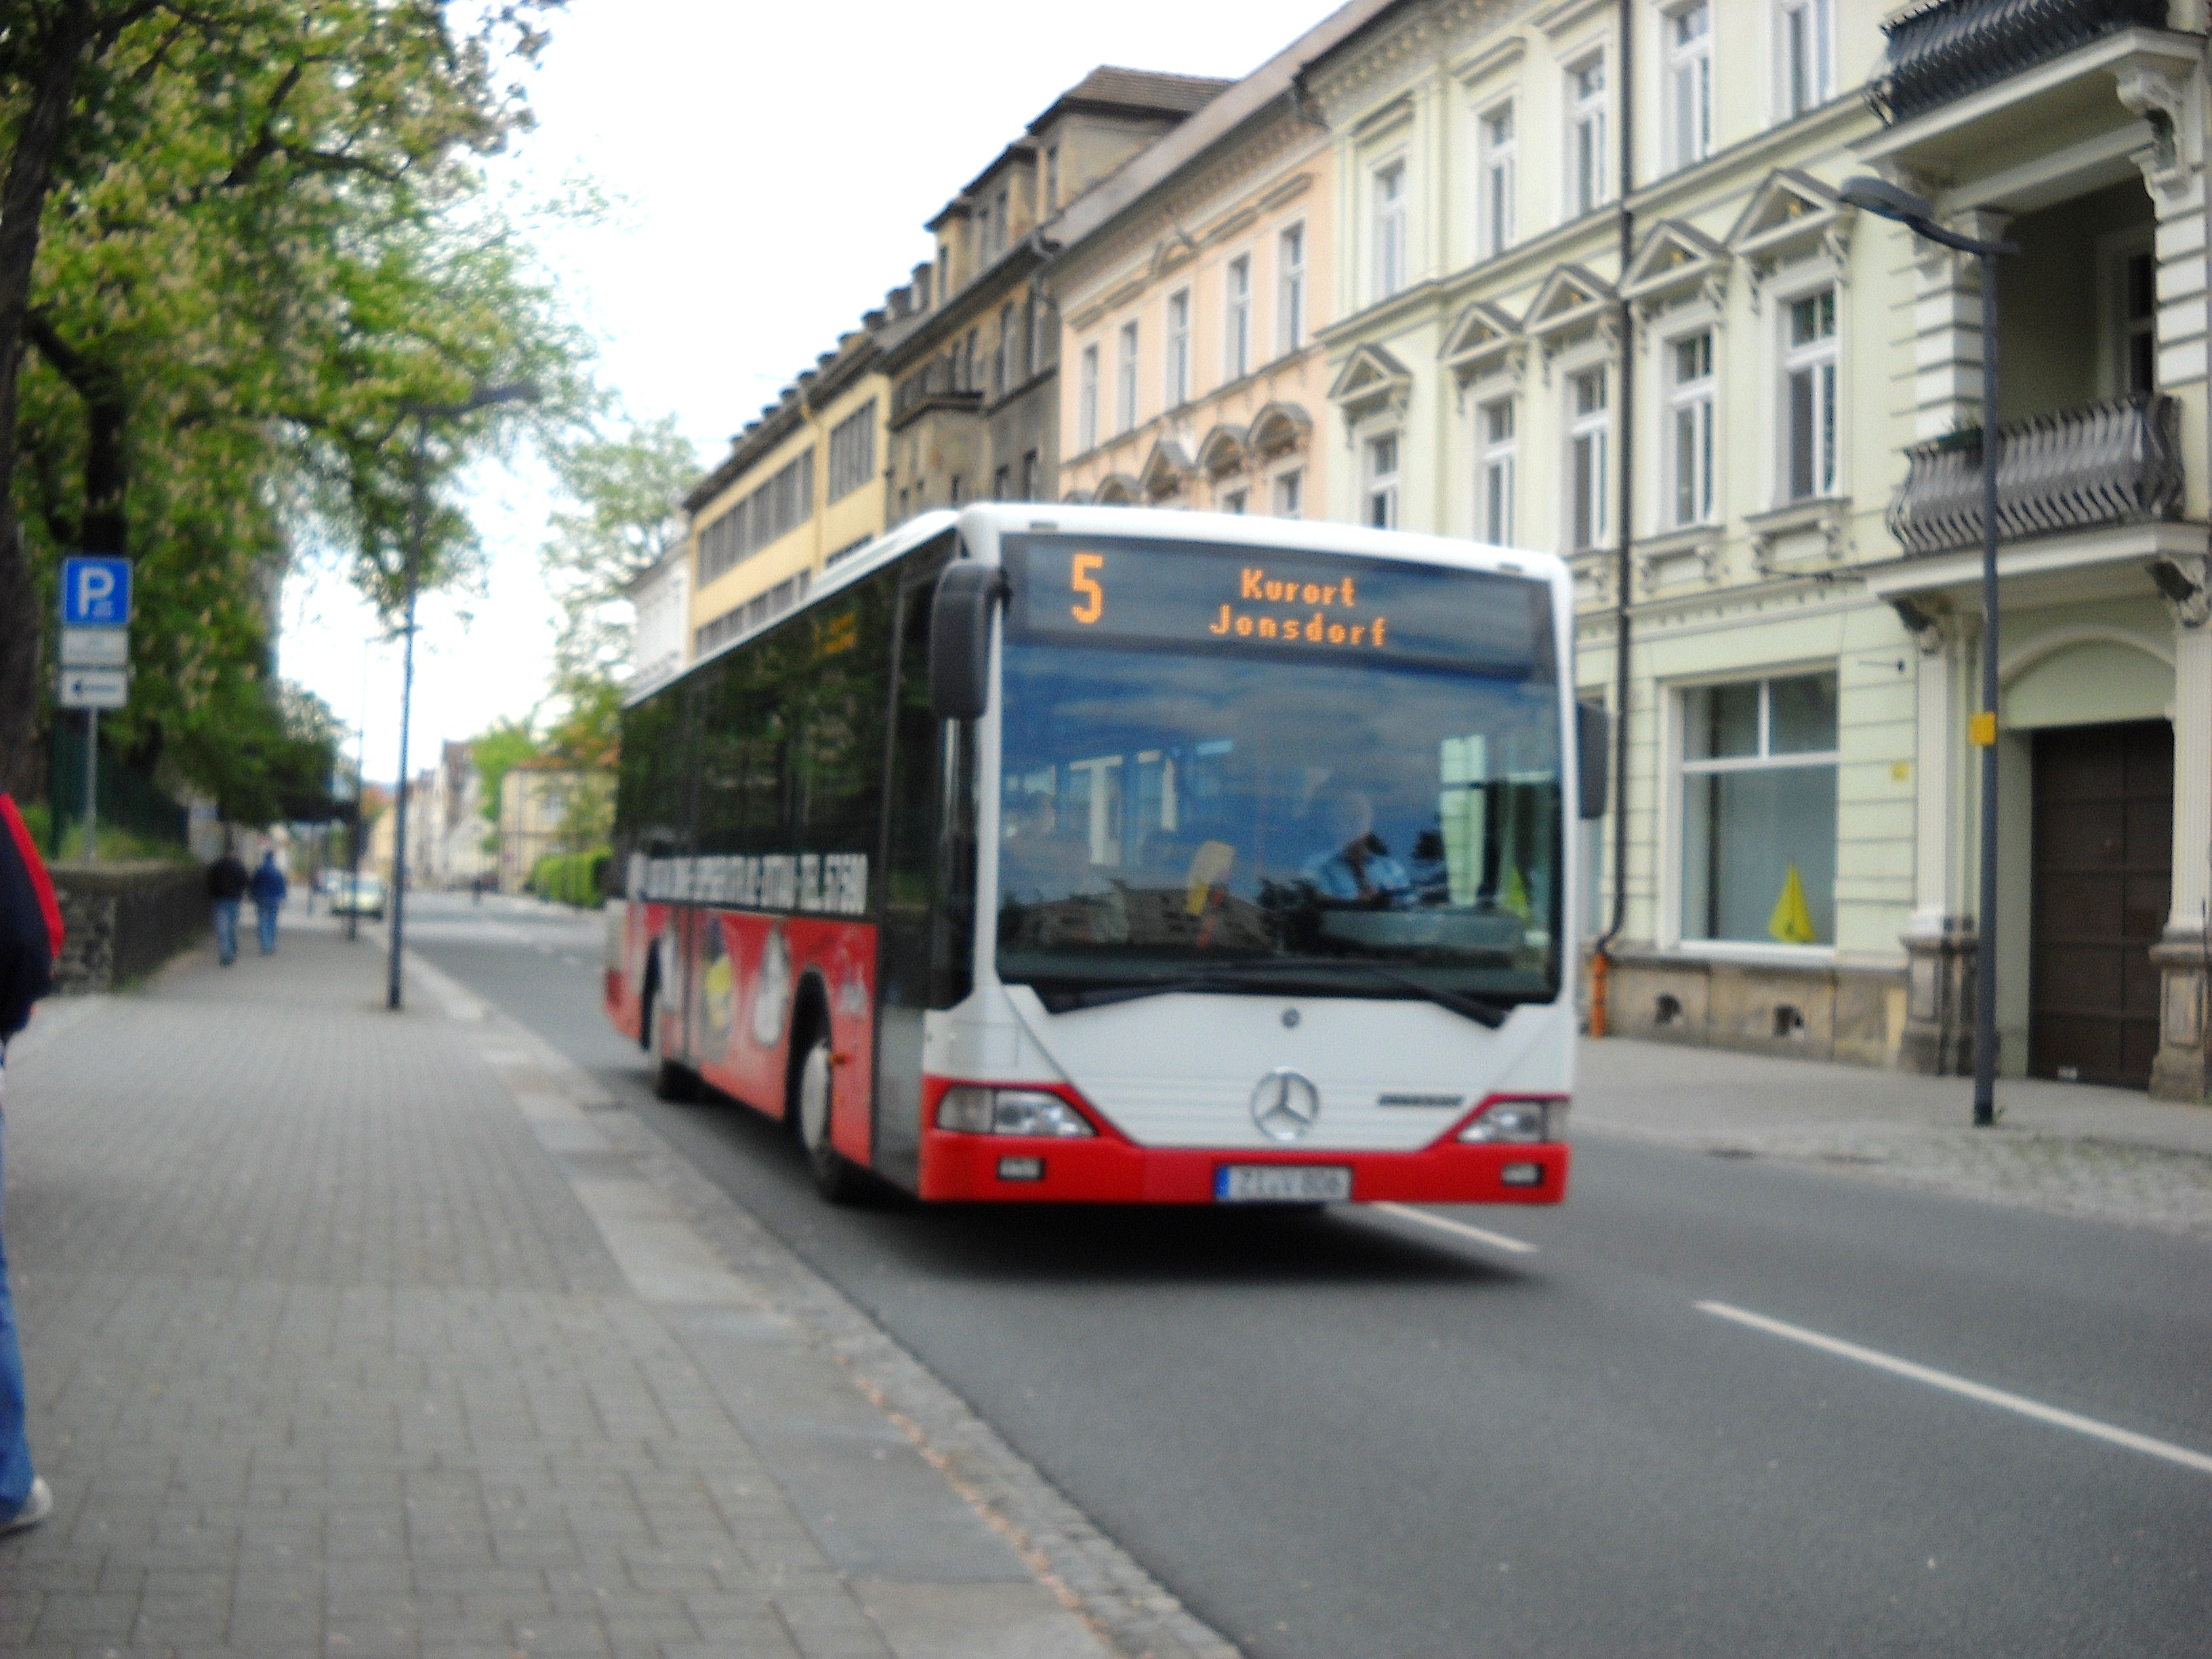 ZI-V 806 projíždí na příměstské lince 5 do lázeň.městečka Kurort Jonsdorf po Bahnhofstrasse